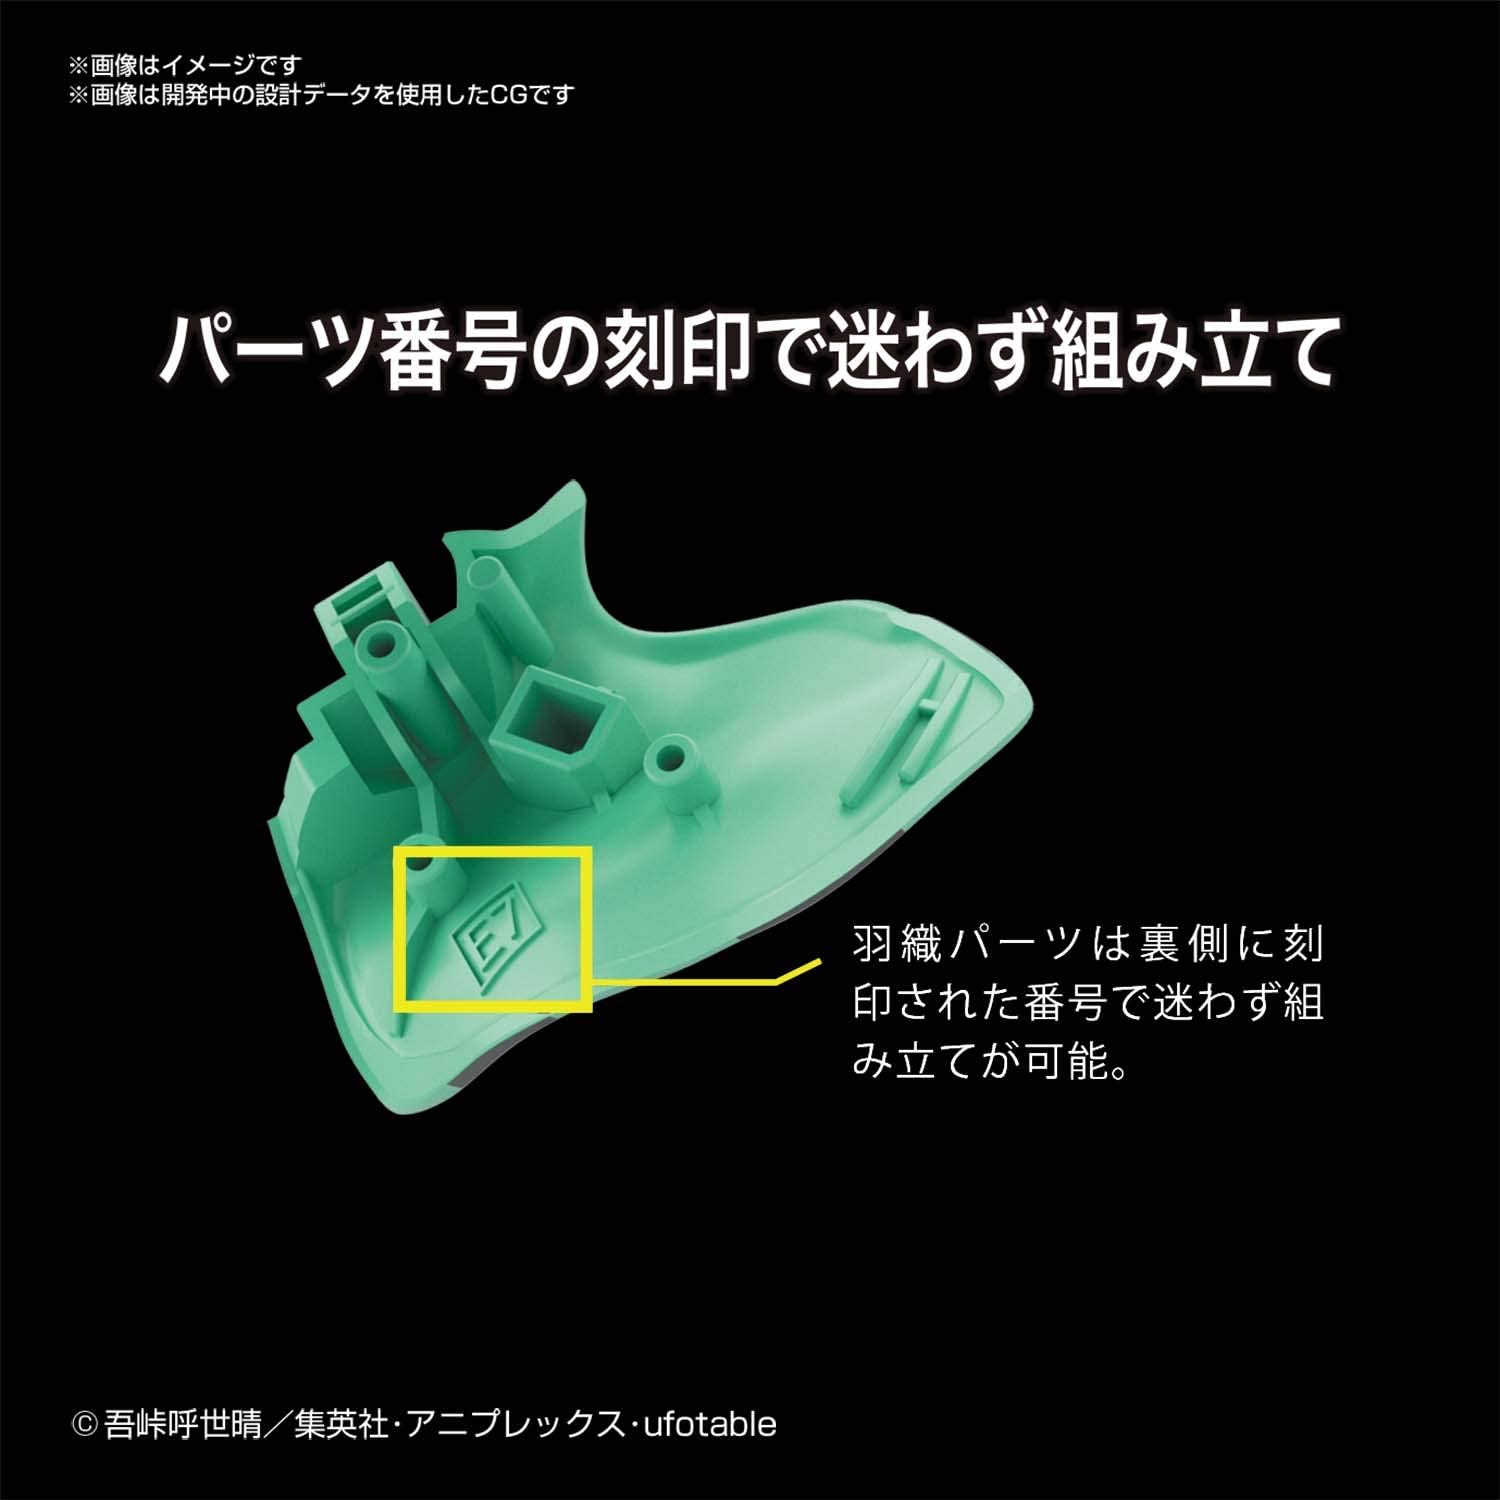 Kimetsu Models Tanjiro Kamado Plastic Model "Demon Slayer: Kimetsu no Yaiba" | animota